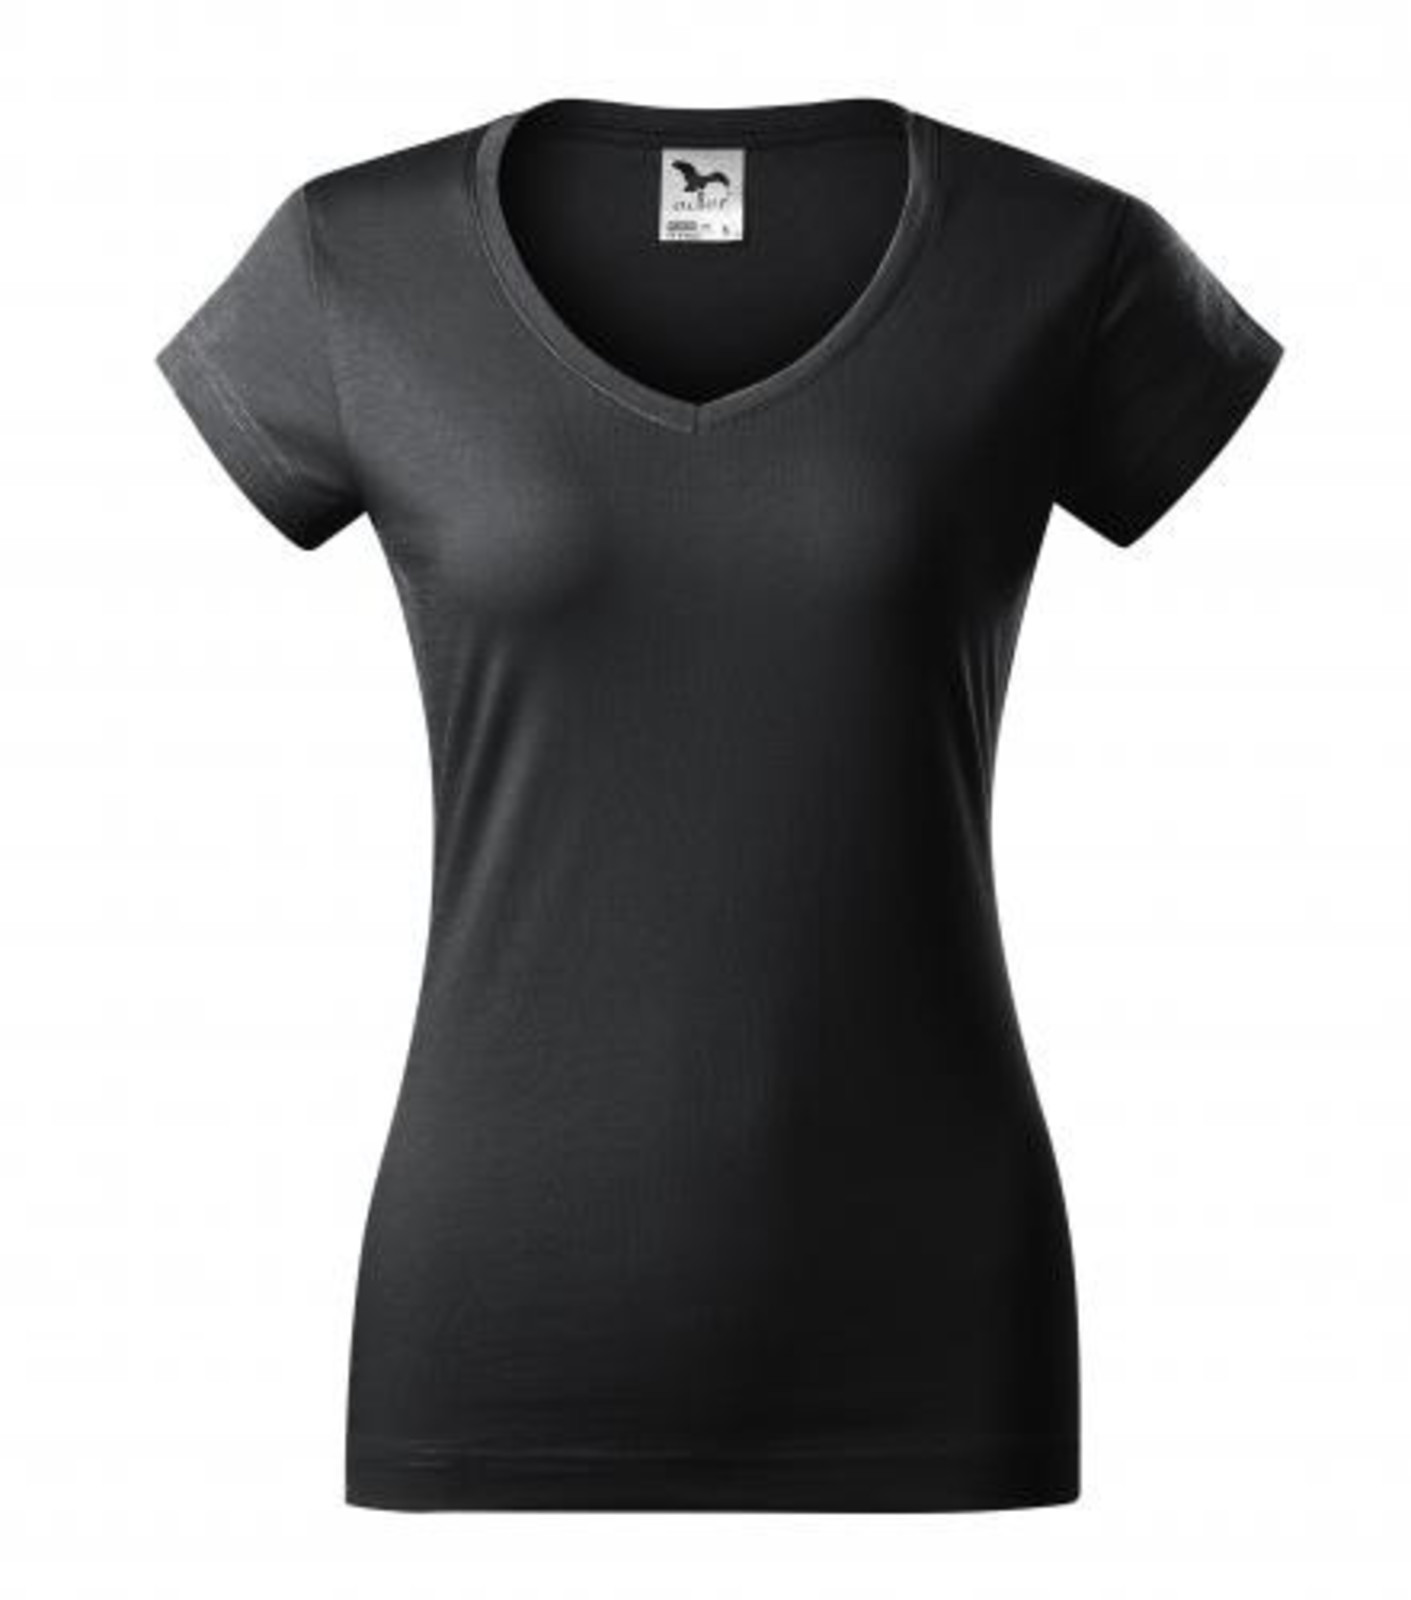 Dámske tričko s V výstrihom Adler Fit V-Neck 162 - veľkosť: XS, farba: šedá ebony